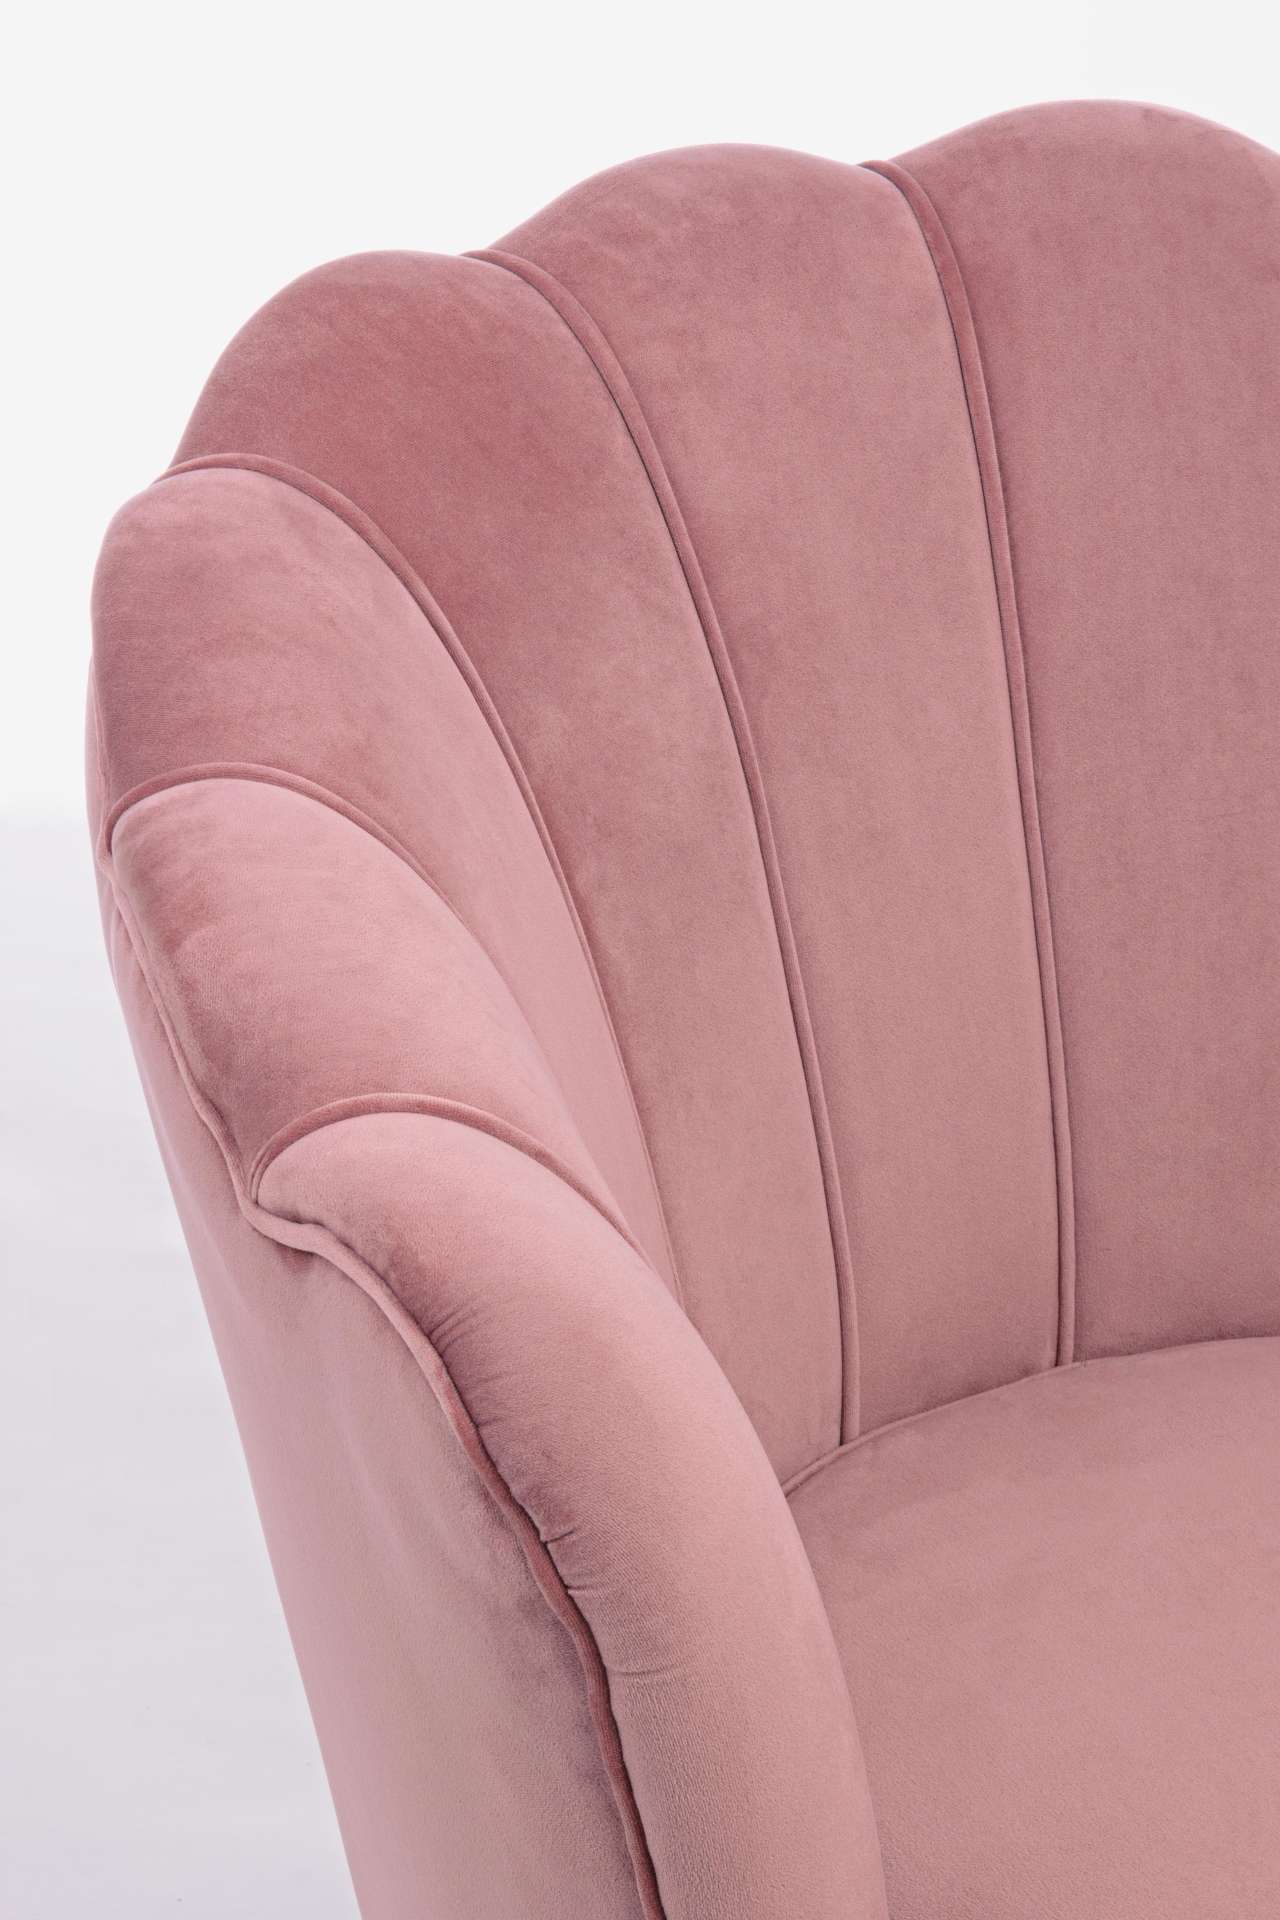 Der Sessel Giliola überzeugt mit seinem modernen Design. Gefertigt wurde er aus Stoff in Samt-Optik, welcher einen rosa Farbton besitzt. Das Gestell ist aus Metall und hat eine goldene Farbe. Der Sessel besitzt eine Sitzhöhe von 45 cm. Die Breite beträgt 